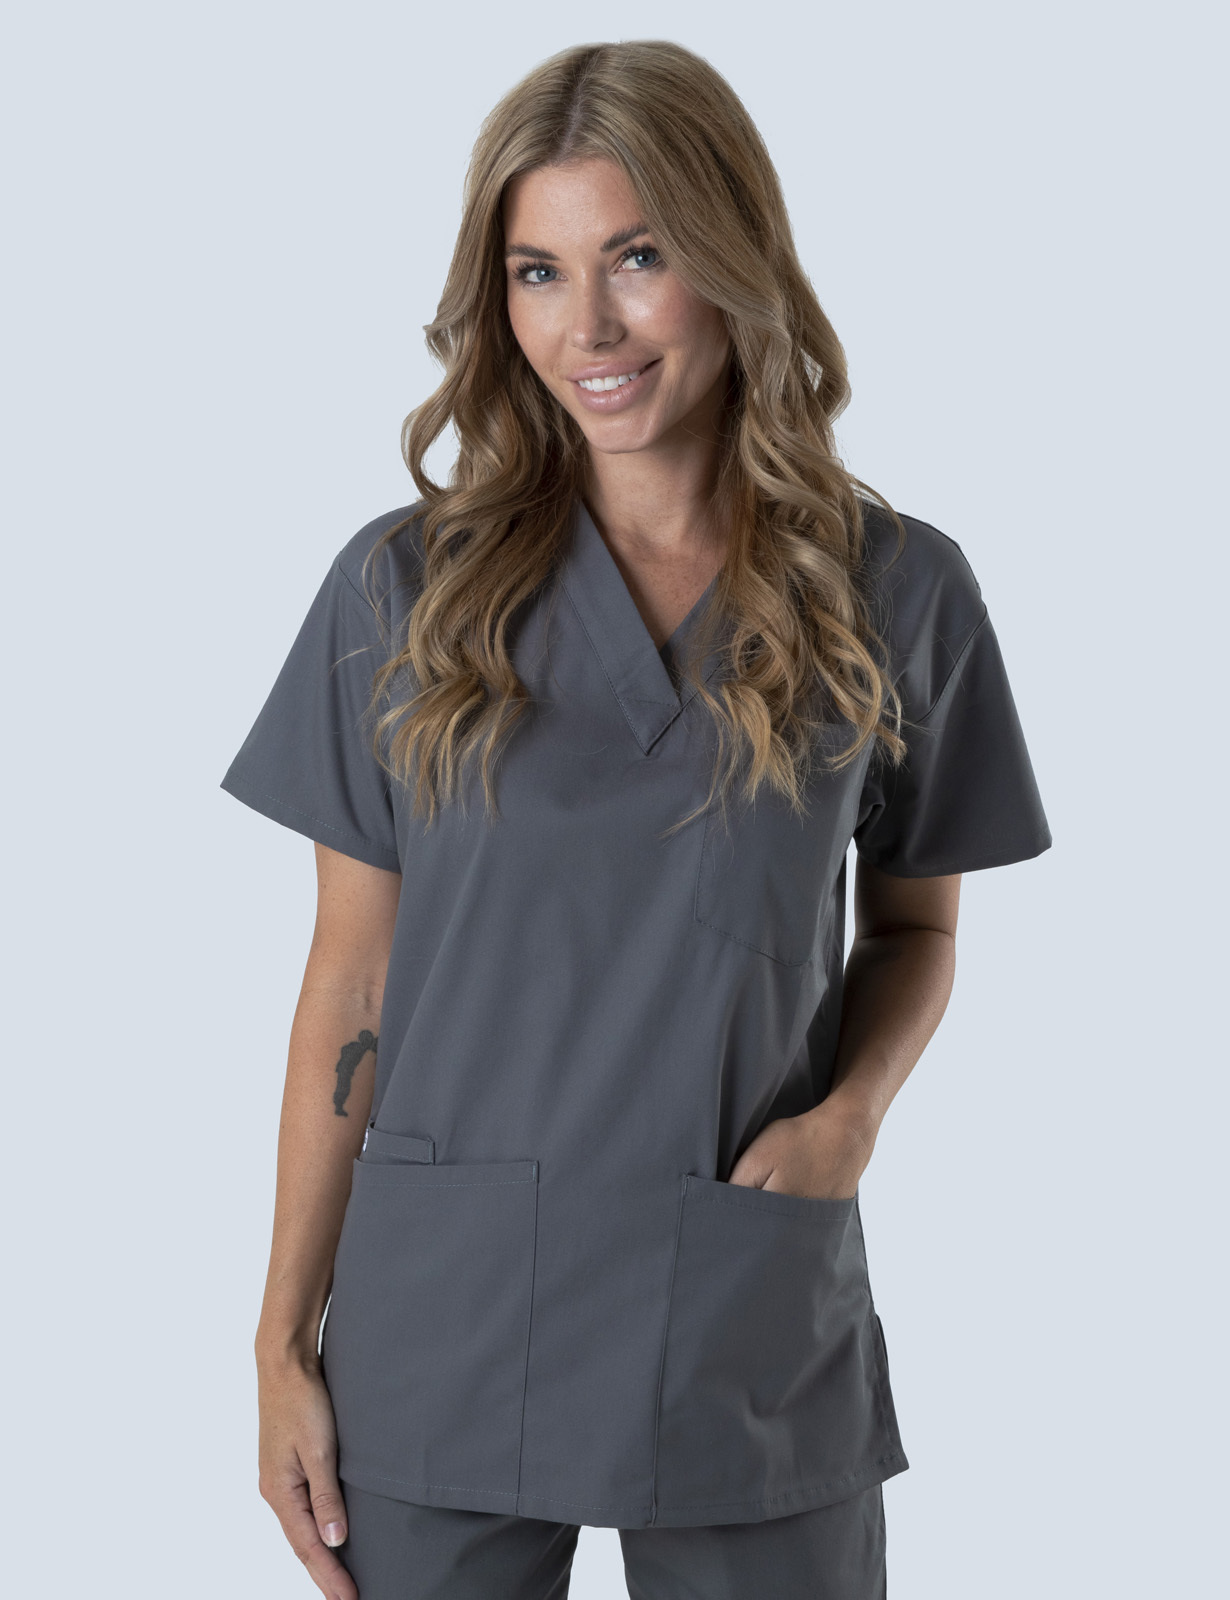 Queensland Children's Hospital Emergency Department Assistant in Nursing  Uniform Top Bundle  (4 Pocket Top in Steel grey incl Logos)